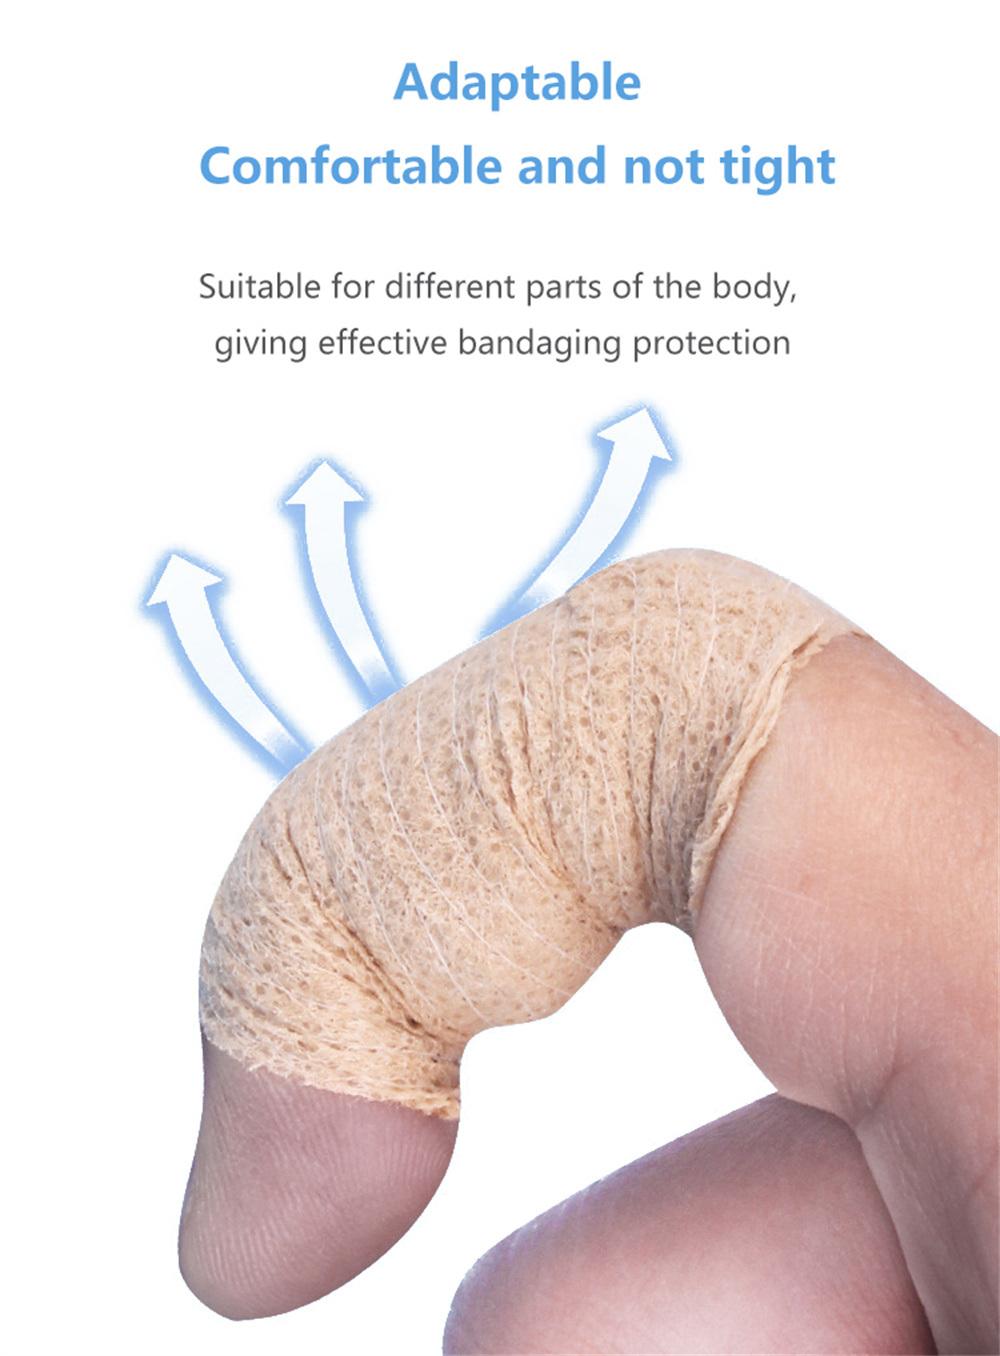 High Quality Cohesive Elastic Bandage Vet Wrap Bandage Self-Adhesive Bandage